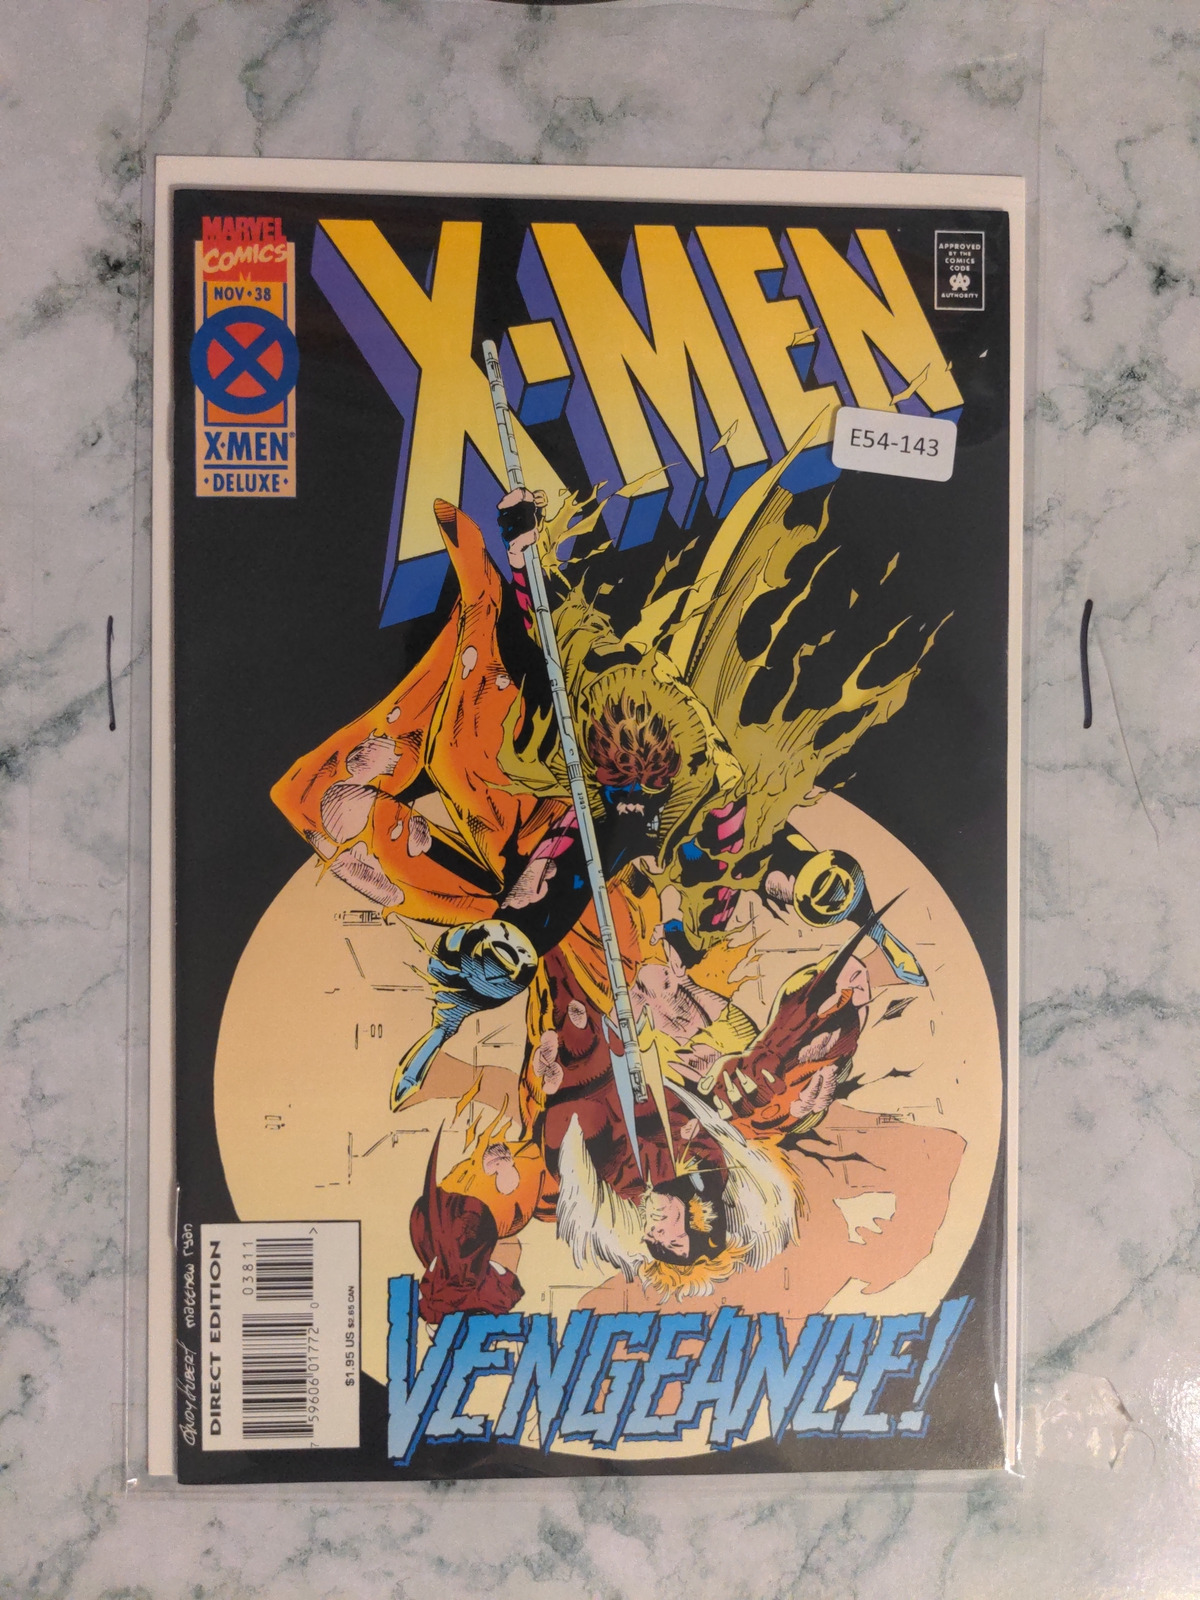 X-MEN #38 VOL. 2 9.0 MARVEL COMIC BOOK E54-143